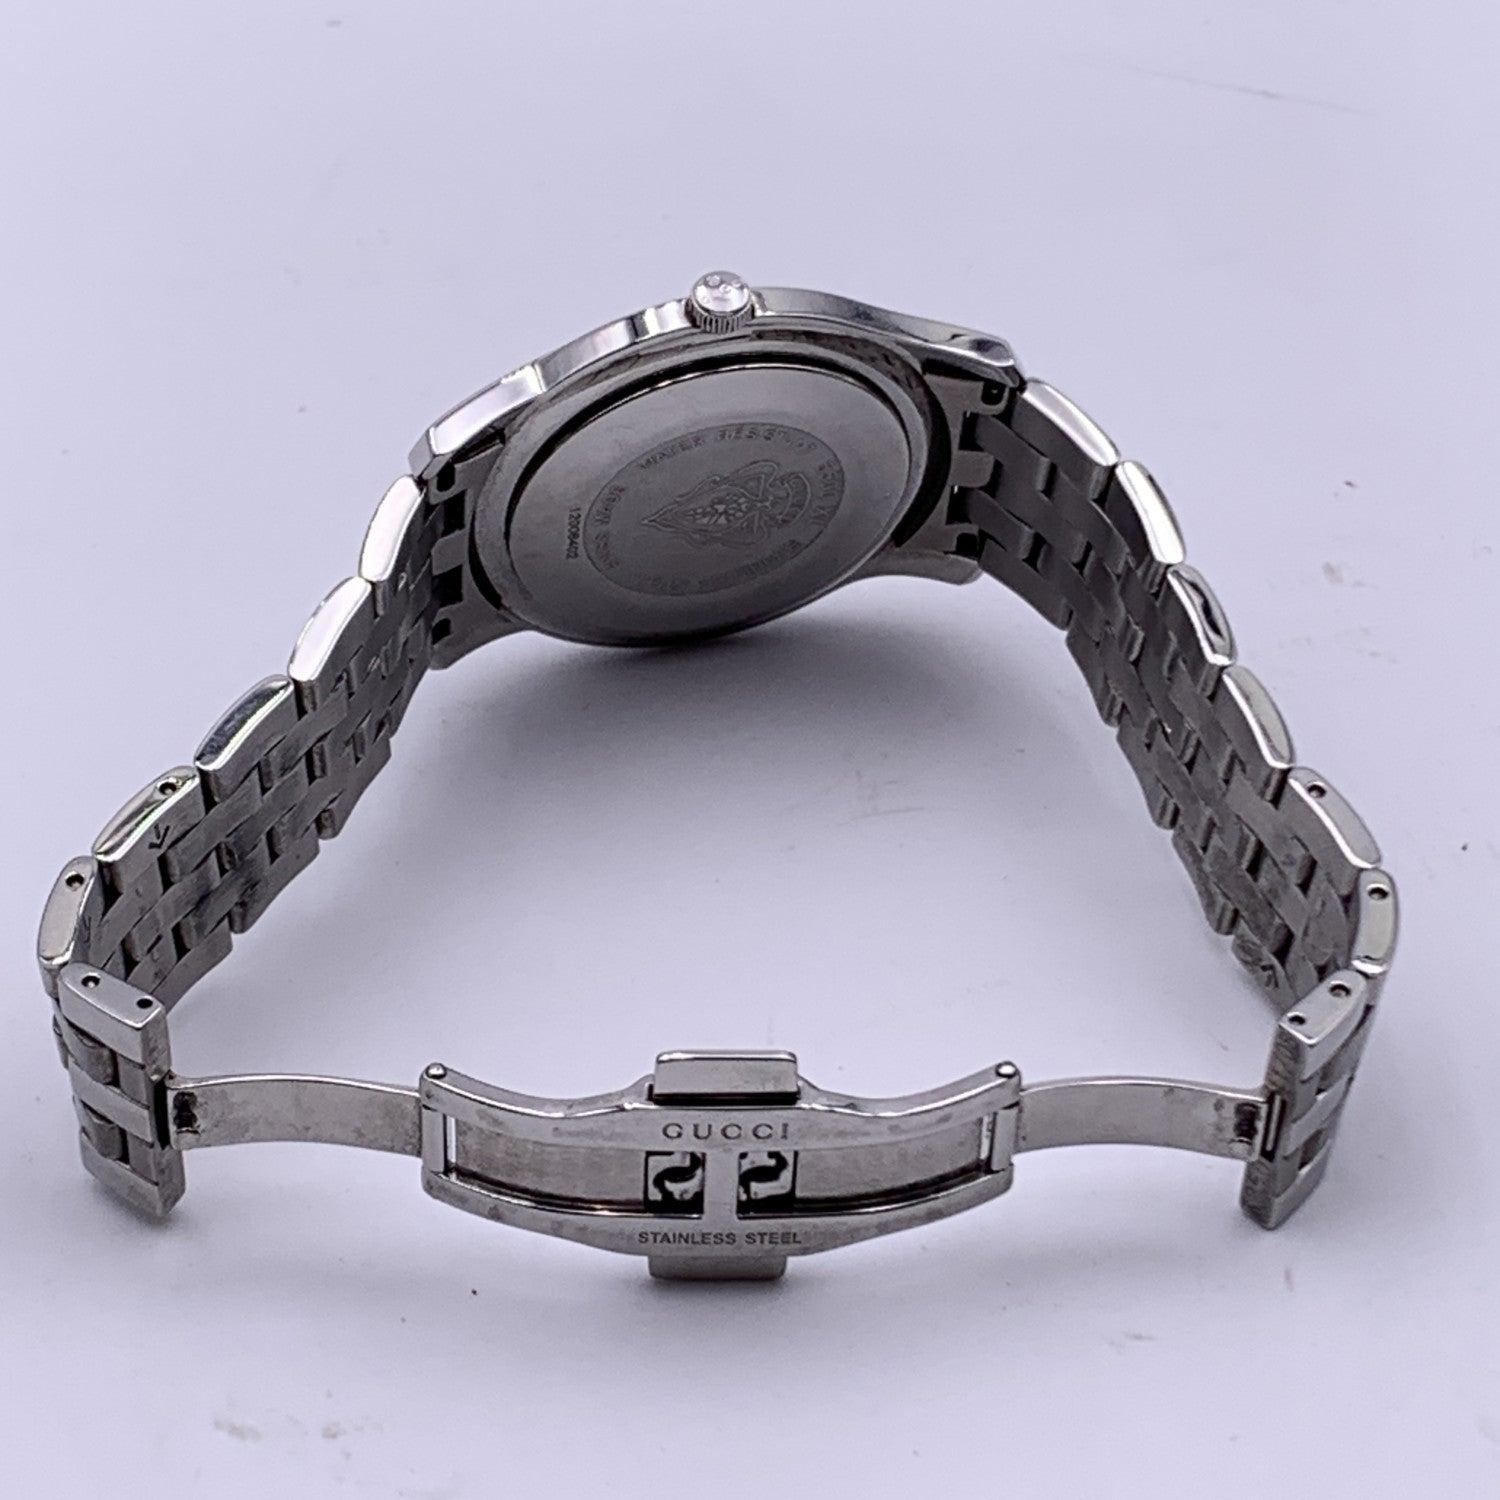 Silber-Edelstahl-Armbanduhr Mod 5500 XL von Gucci mit schwarzem Zifferblatt für Damen oder Herren